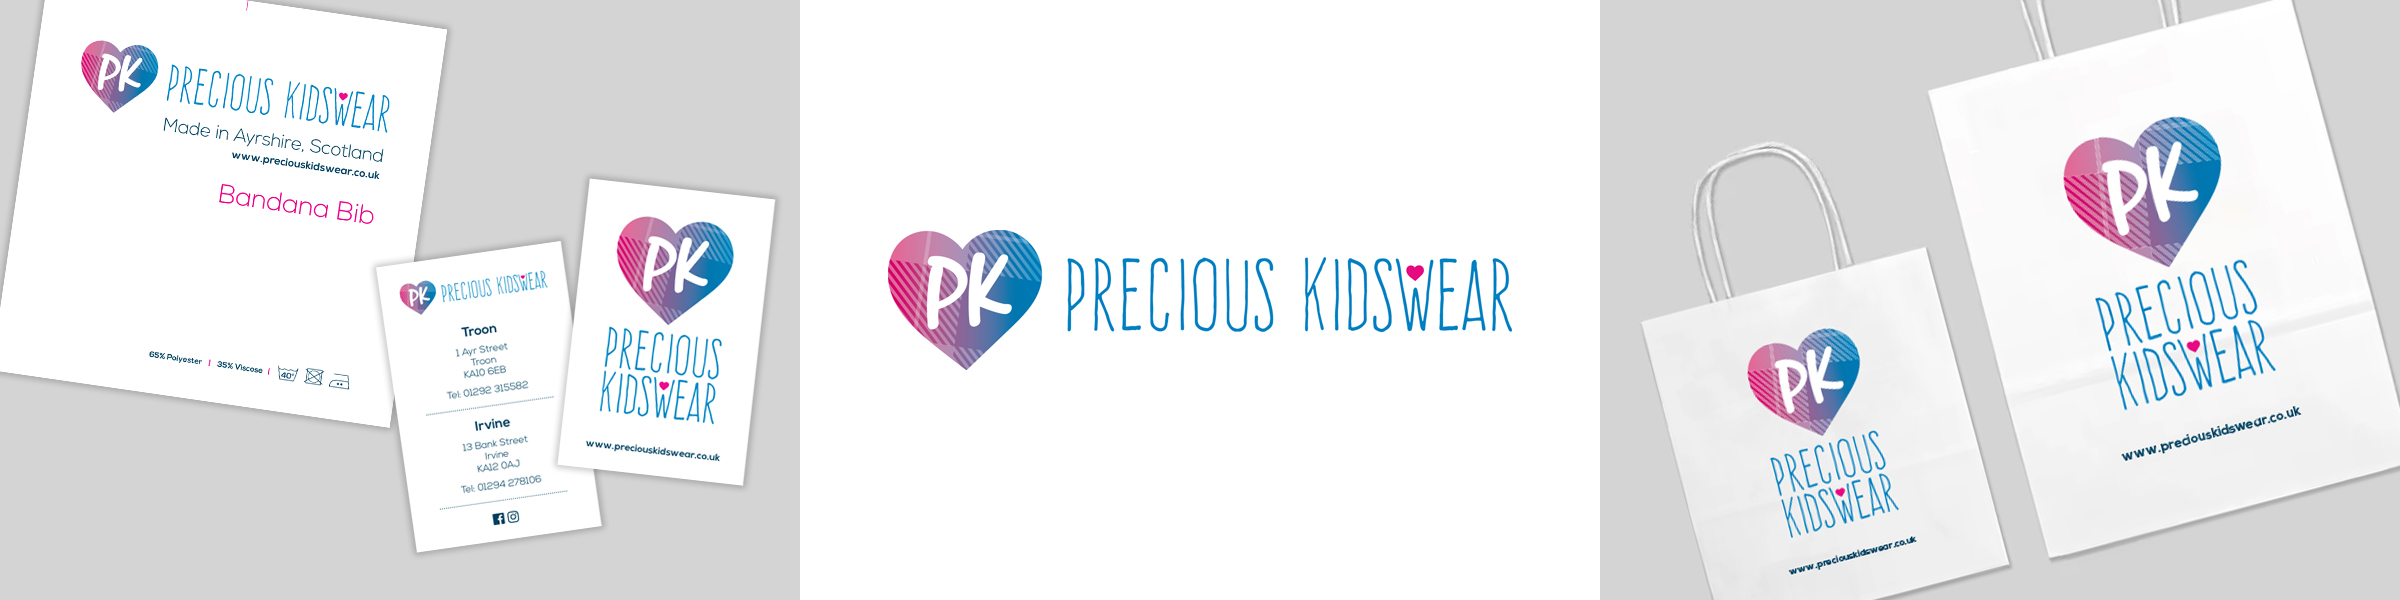 Precious Kidswear